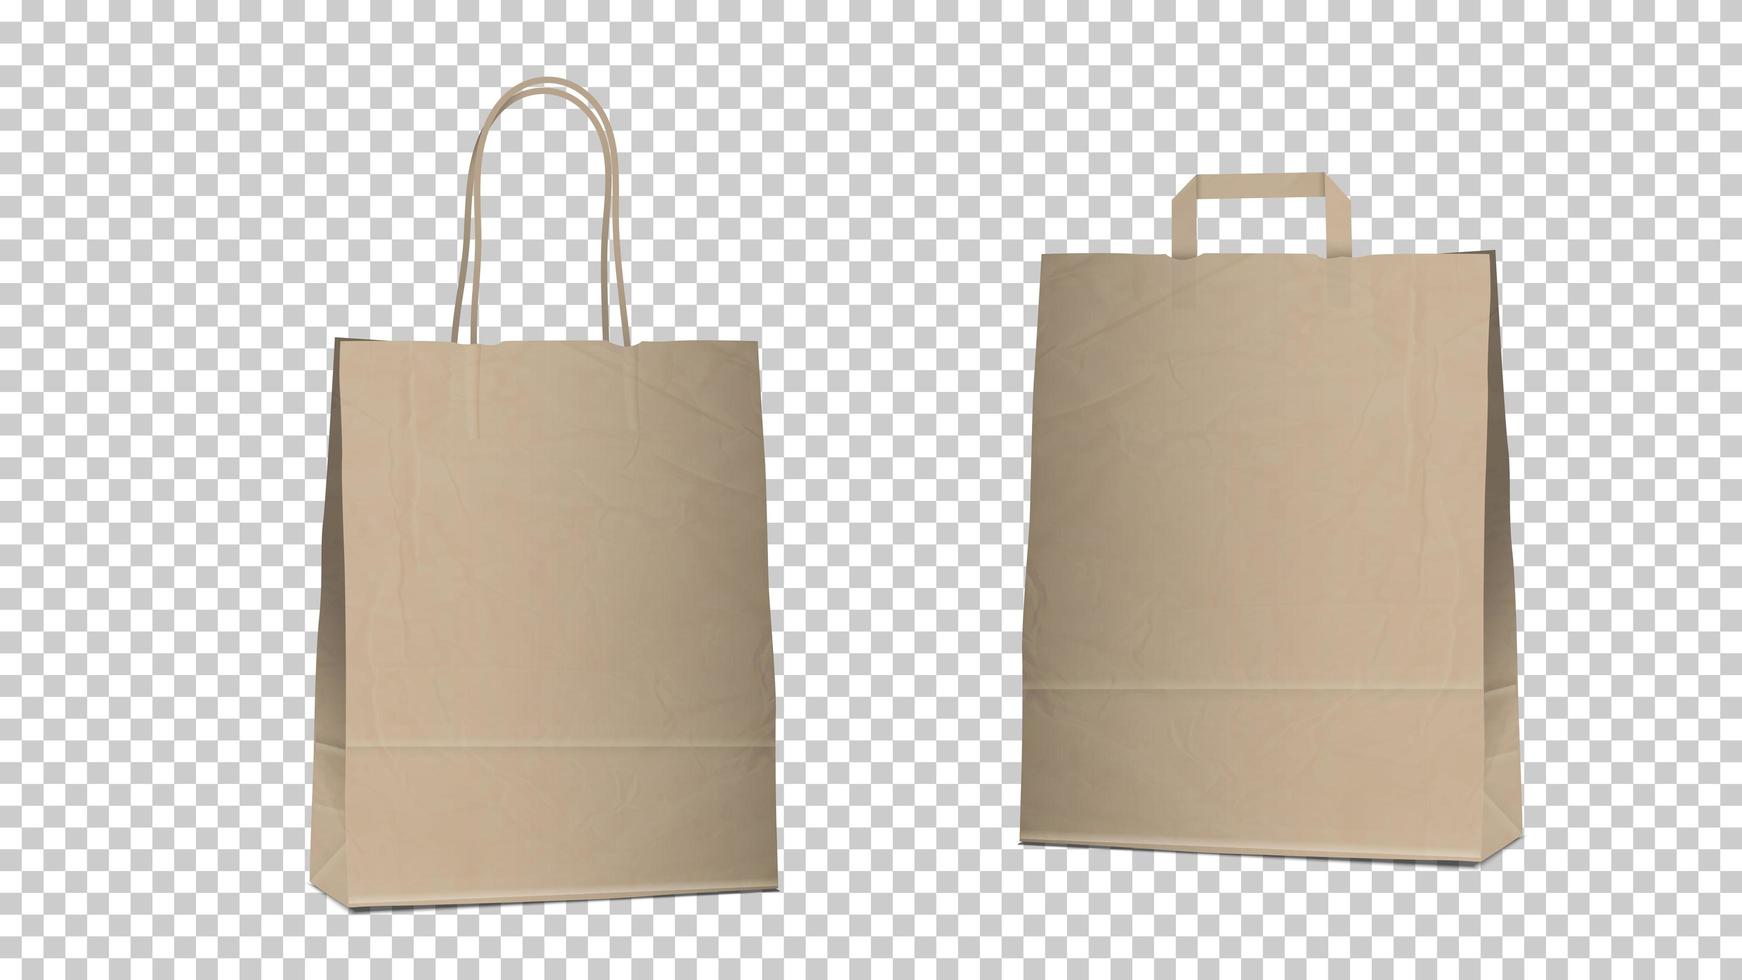 shopping sacchetti vuoti isolati, due diversi sacchetti di carta marrone riciclabili vuoti con manici per l'imballaggio e lo shopping vettore